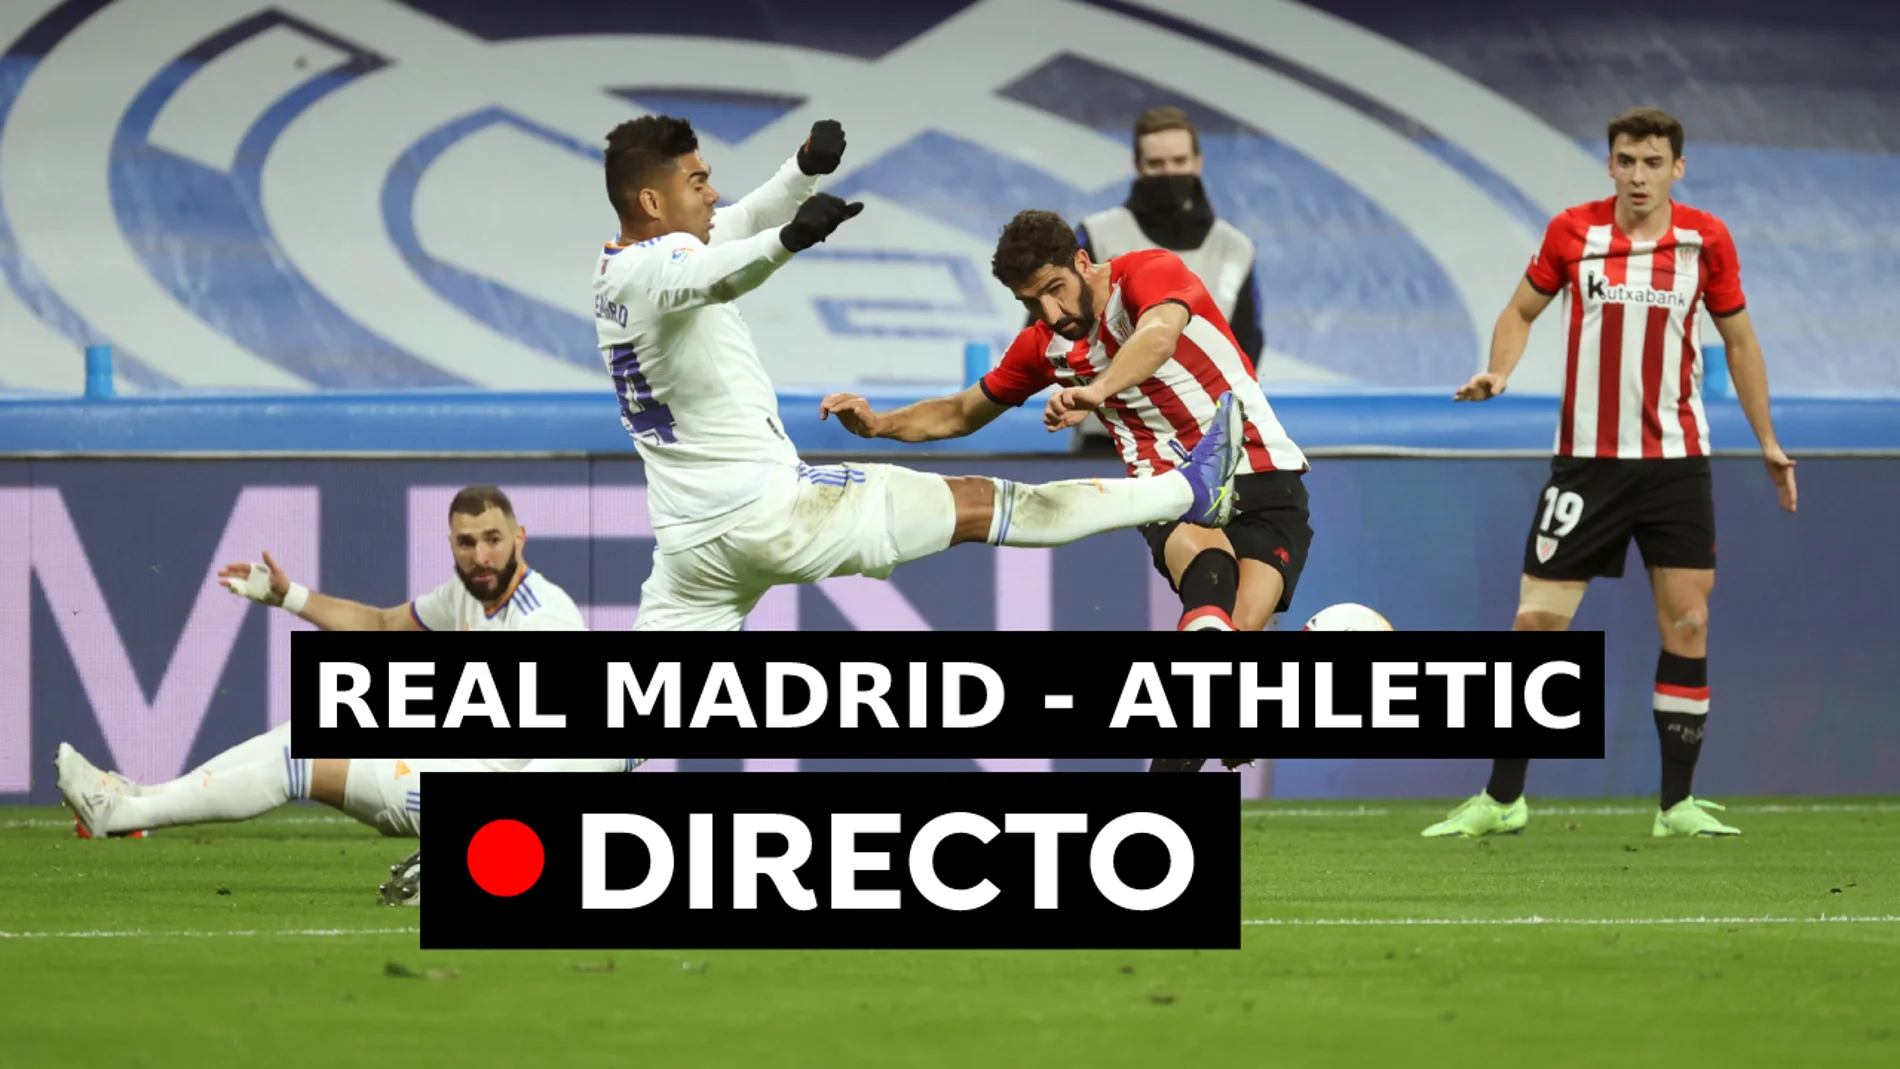 Real Madrid - Athletic, en directo: Resultado y goles del partido de hoy